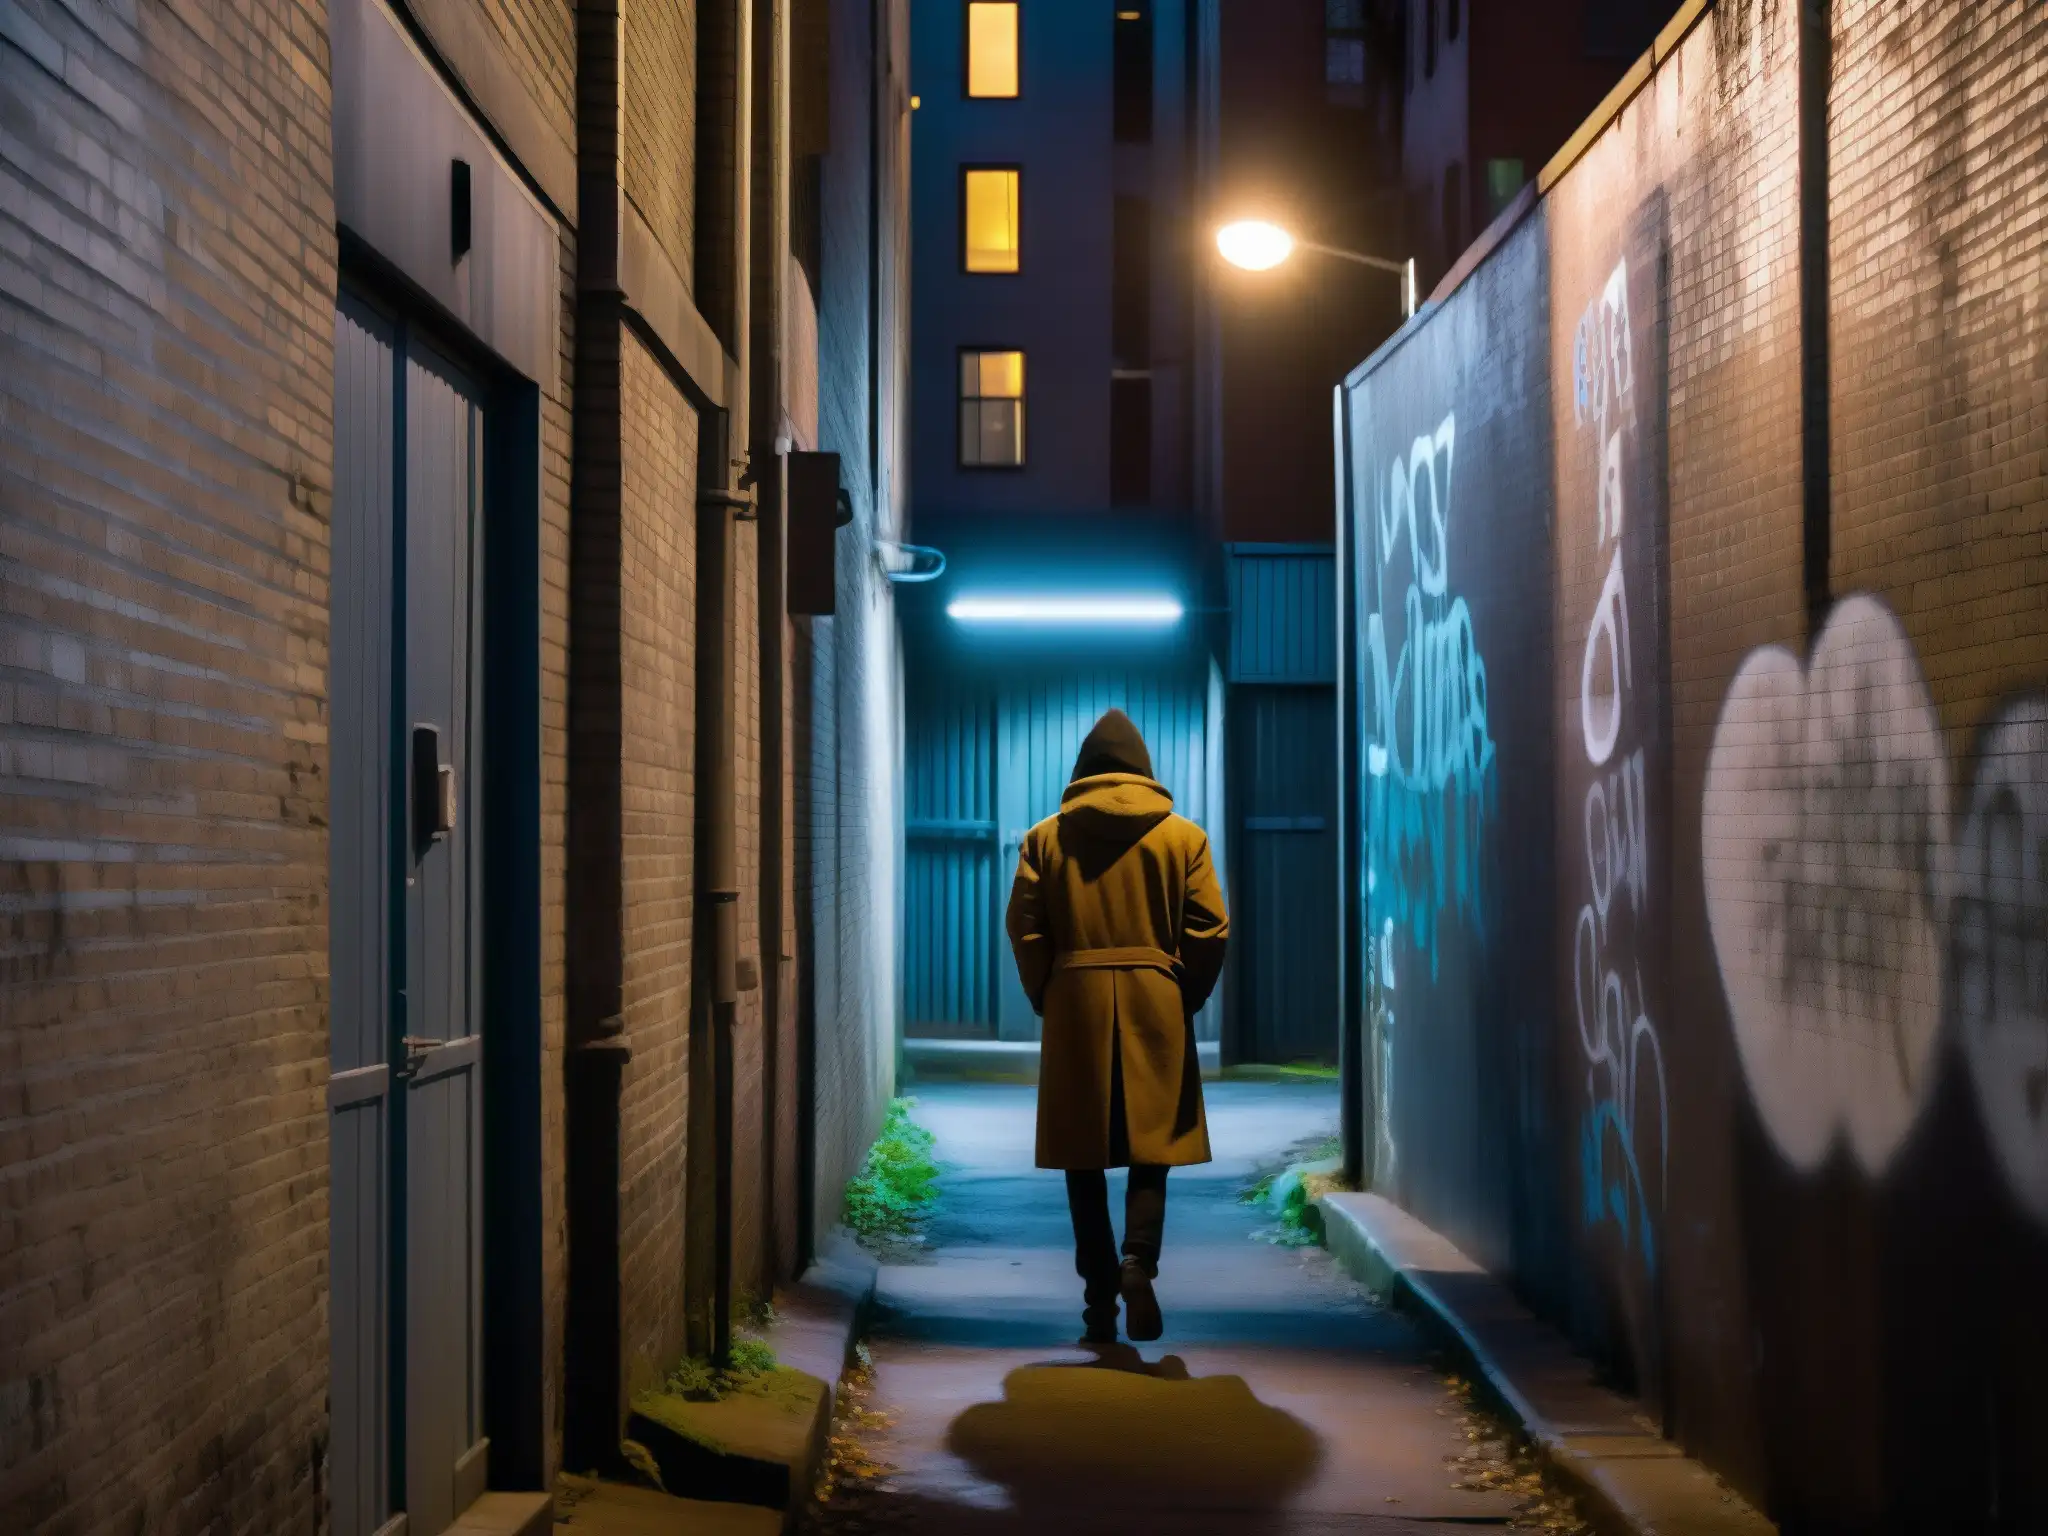 Un callejón sombrío con grafitis y luces tenues, evocando misterio y transformación de la experiencia urbana